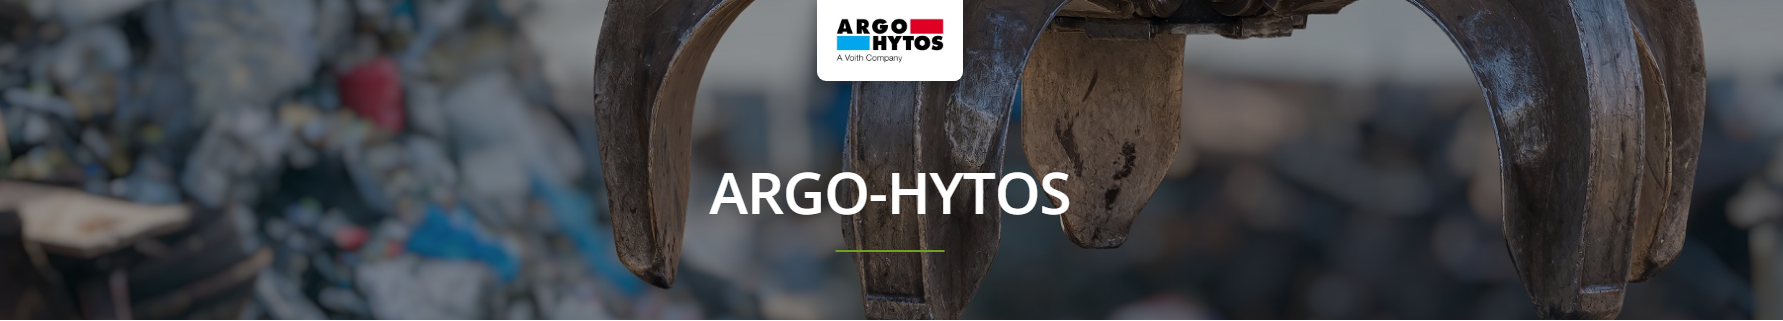 Argo-Hytos Pumps